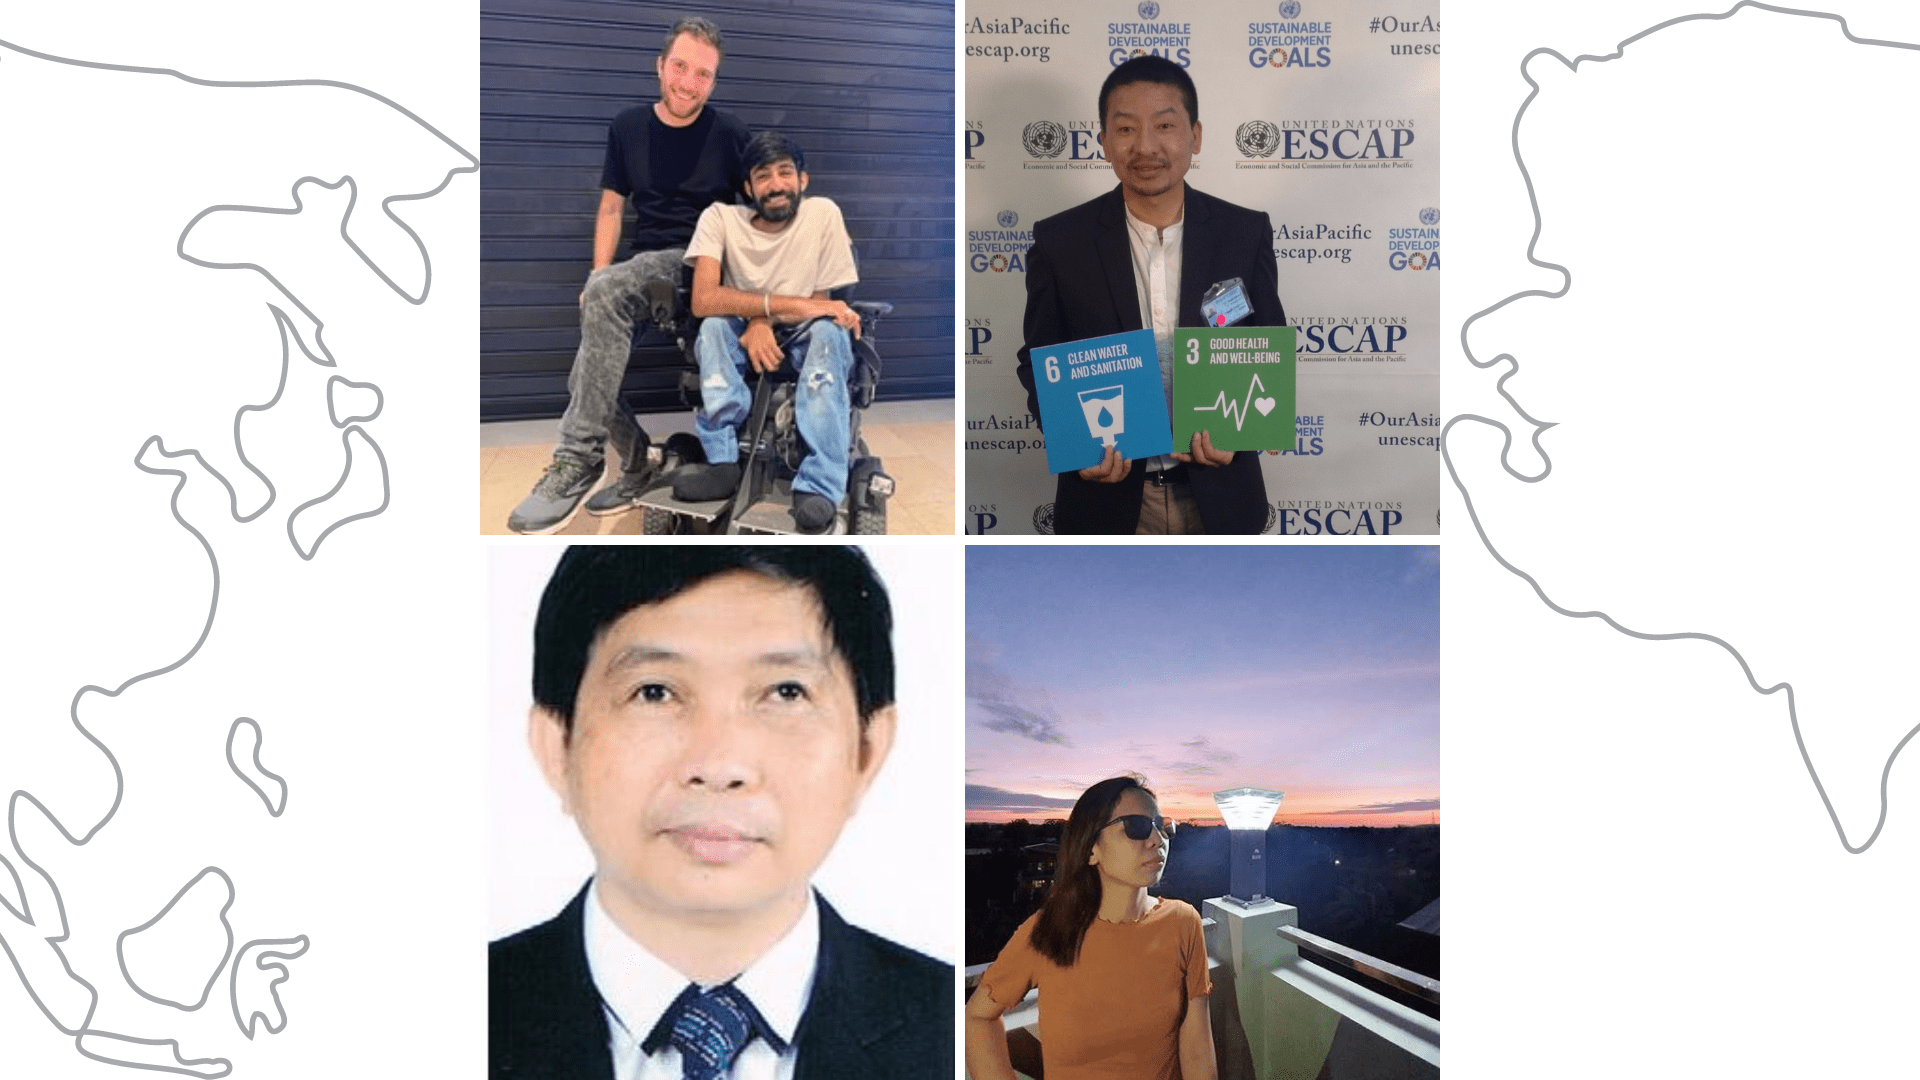 القادة ذوو الإعاقة في آسيا ينضمون إلى حركة "مليار قوي"